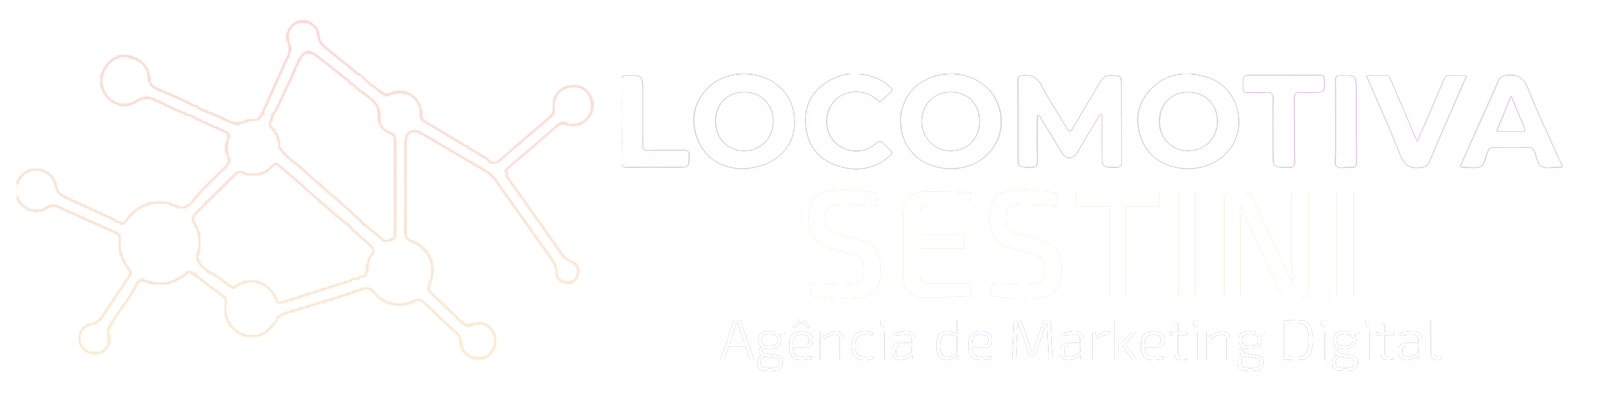 Criação de Sites - Agência Locomotiva Sestini de Marketing Digital 2023 branco